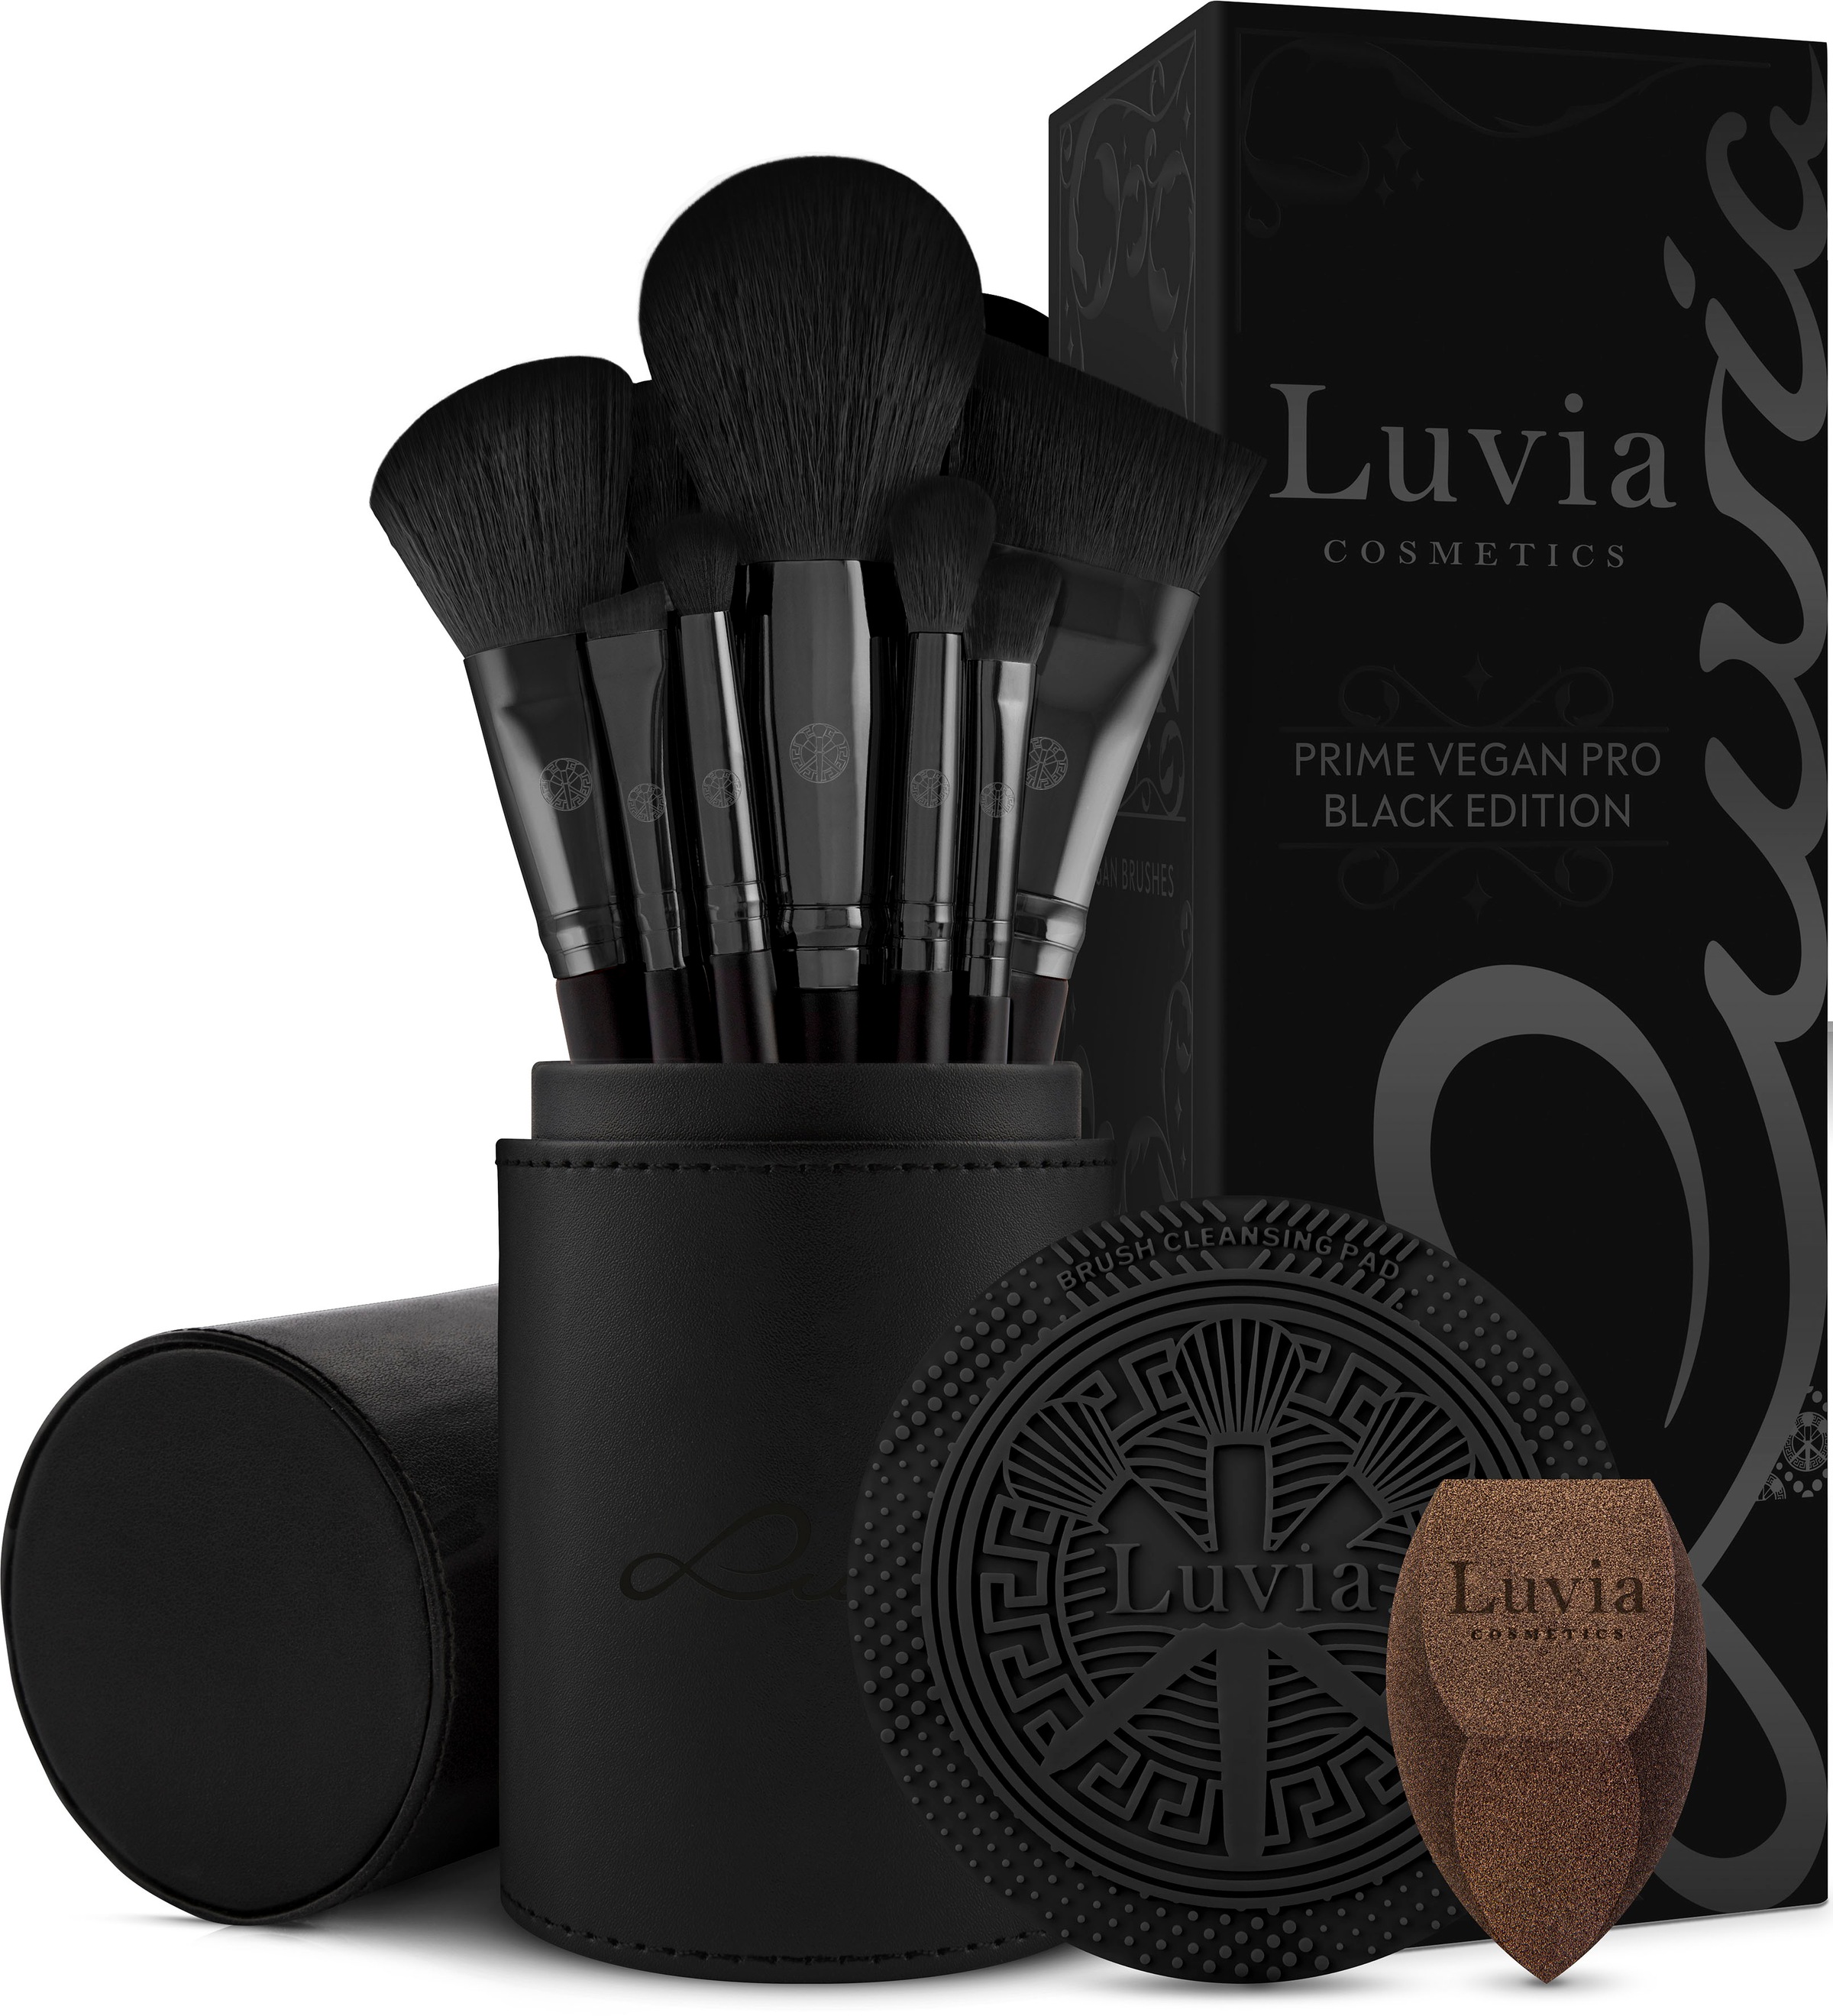 Luvia Cosmetics bei OTTO in großer Auswahl bestellen